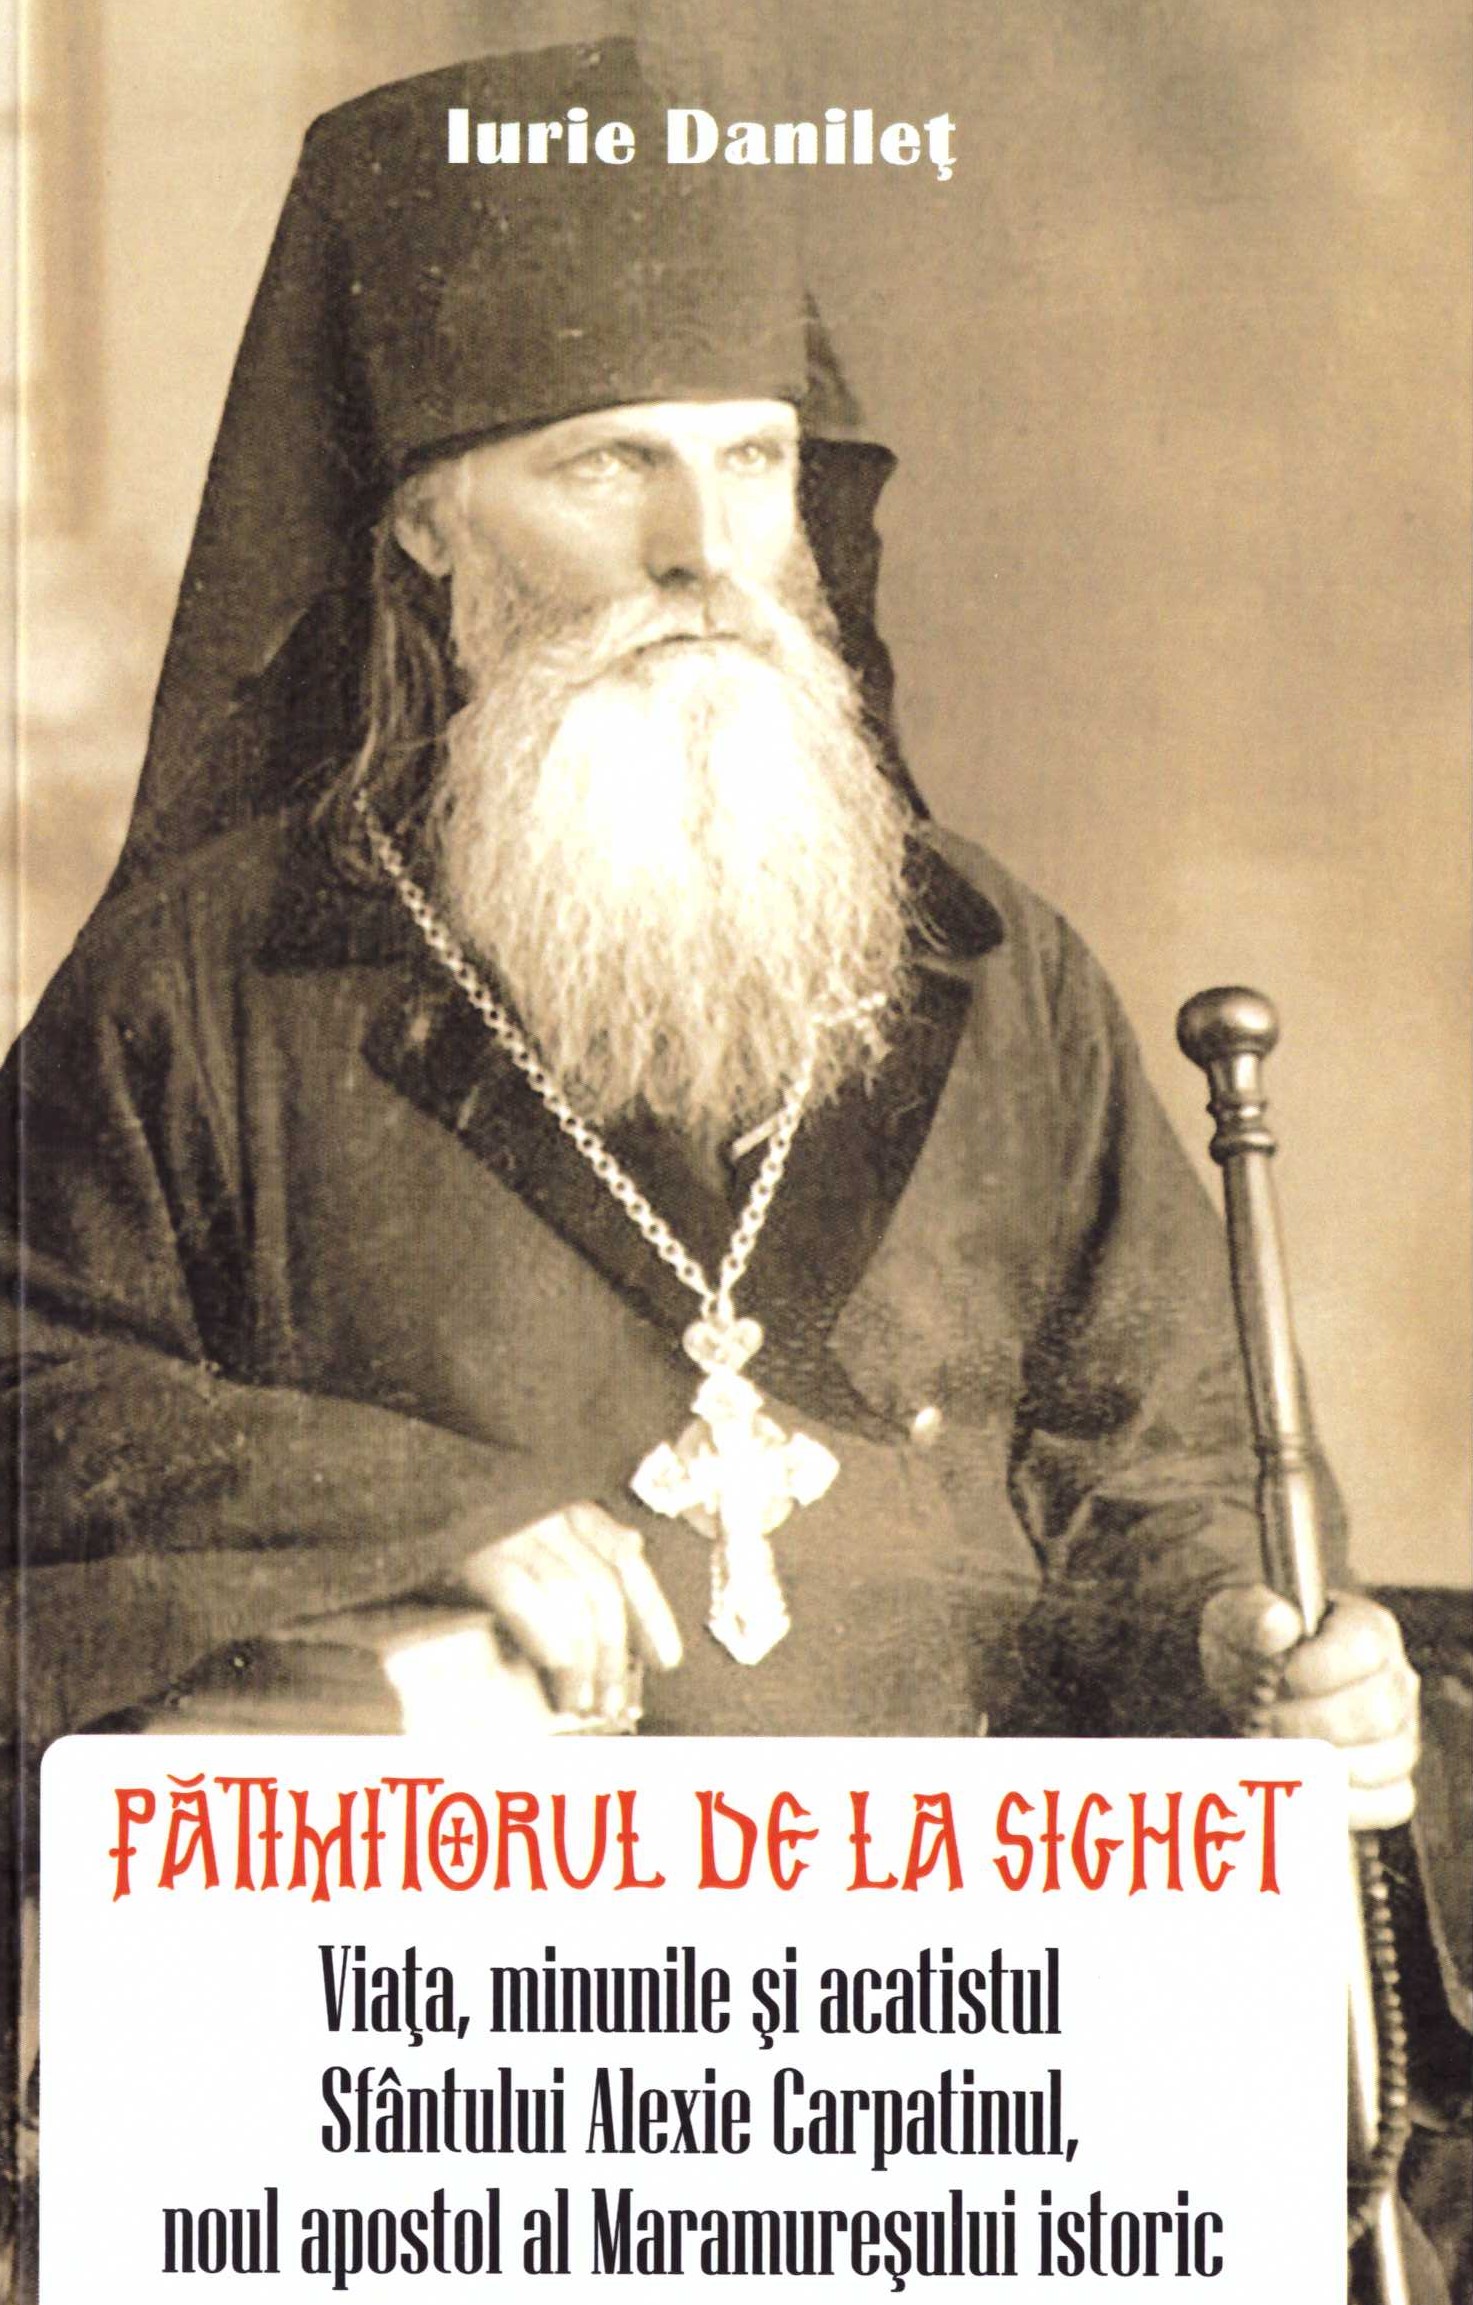 Pătimitorul de la Sighet. Viața, minunile și acatistul Sfântului Alexie Carpatinul, noul apostol al Maramureșului istoric